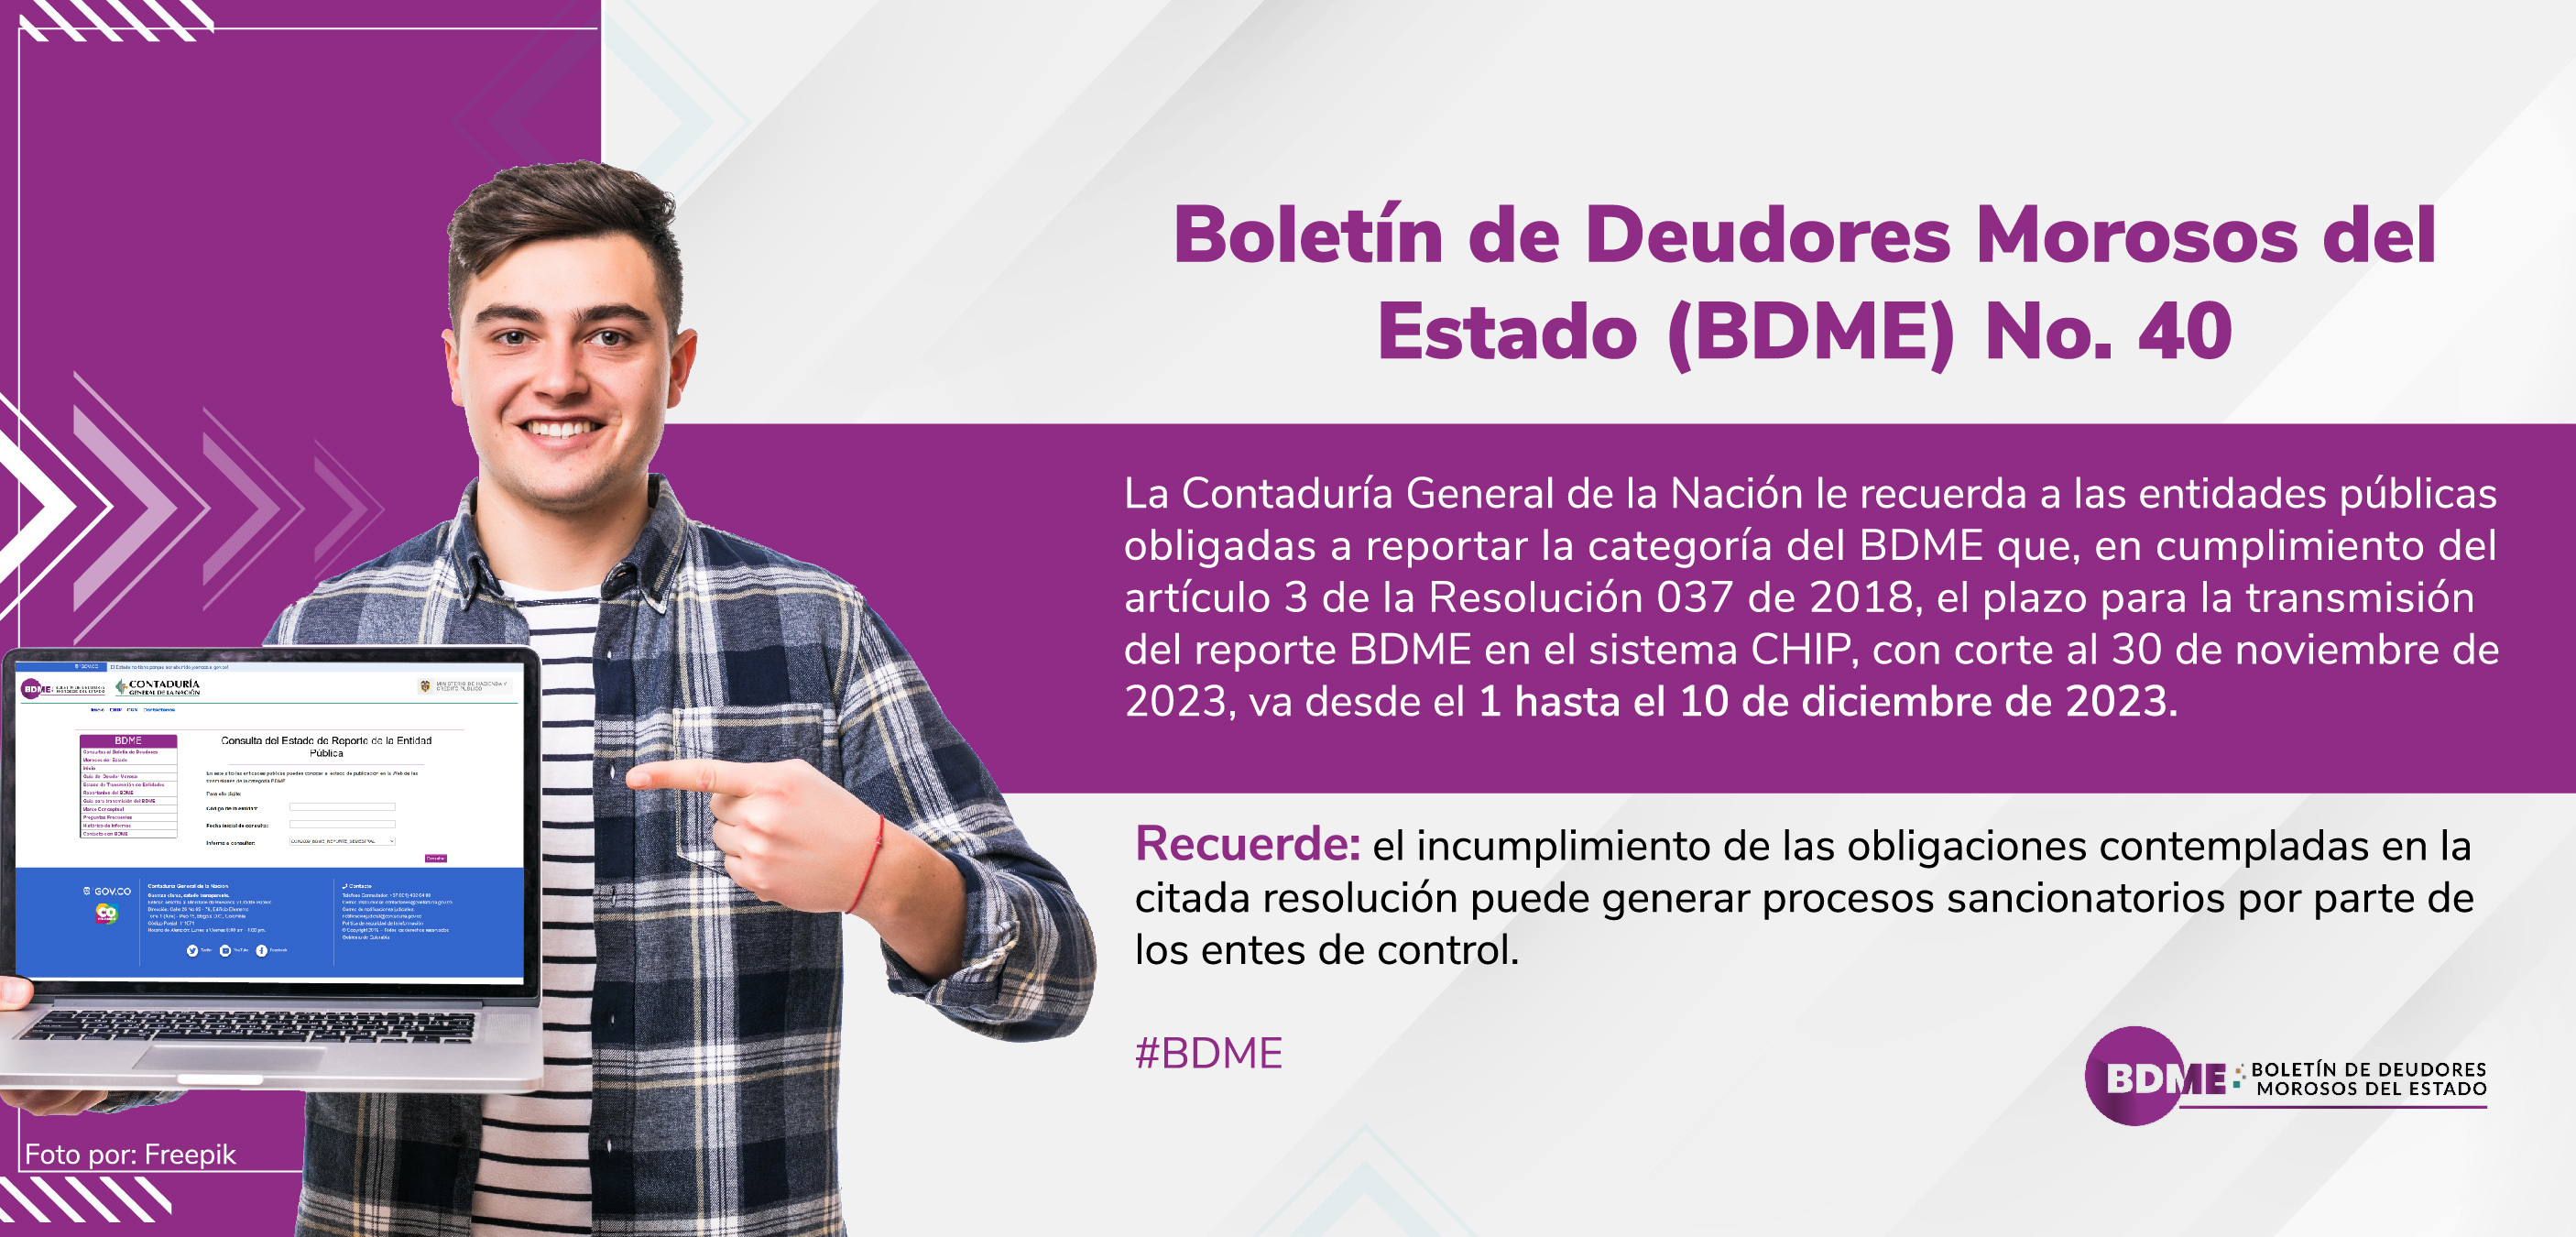 Informe del Boletín de Deudores Morosos del Estado (BDME) No. 40 con corte al 30 de noviembre de 2023